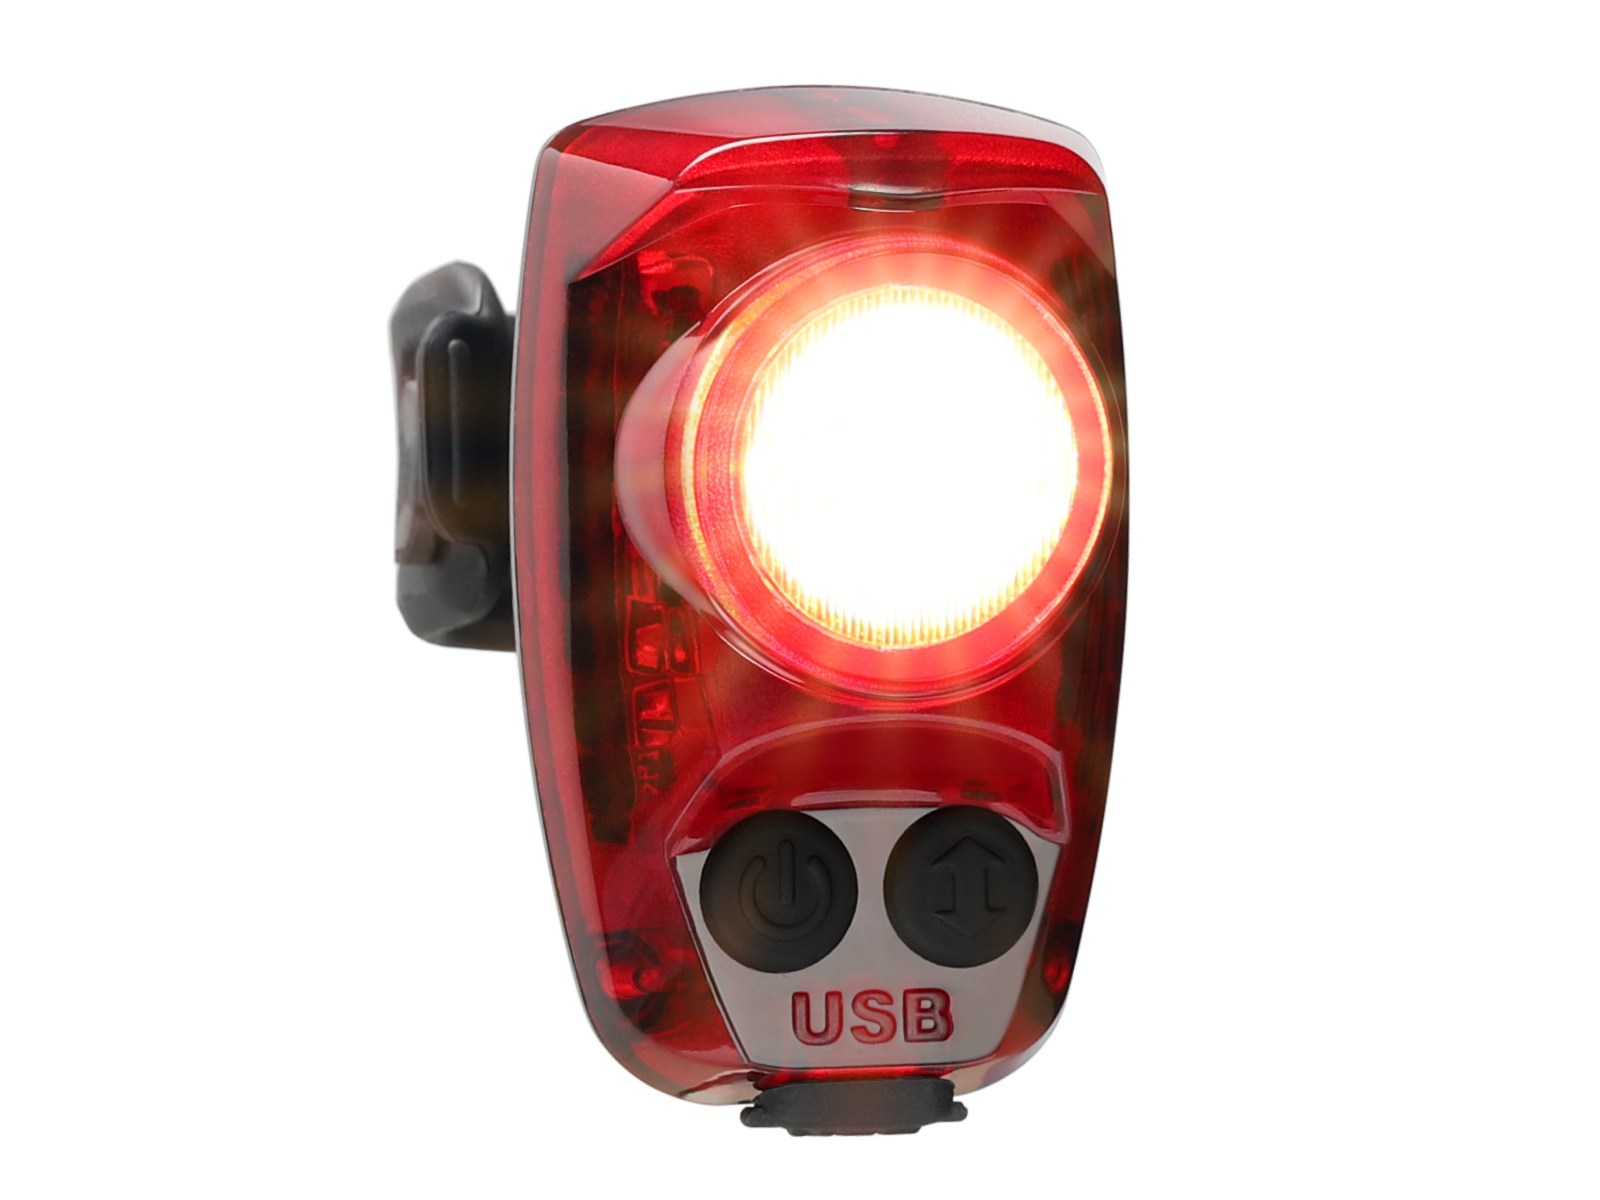 Задний фонарь для велосипеда Hotshot Pro 200 люмен Cygolite, красный задний фонарь для велосипеда лампа для велосипеда подсветка светодиодный задний фонарь для езды в ночное время